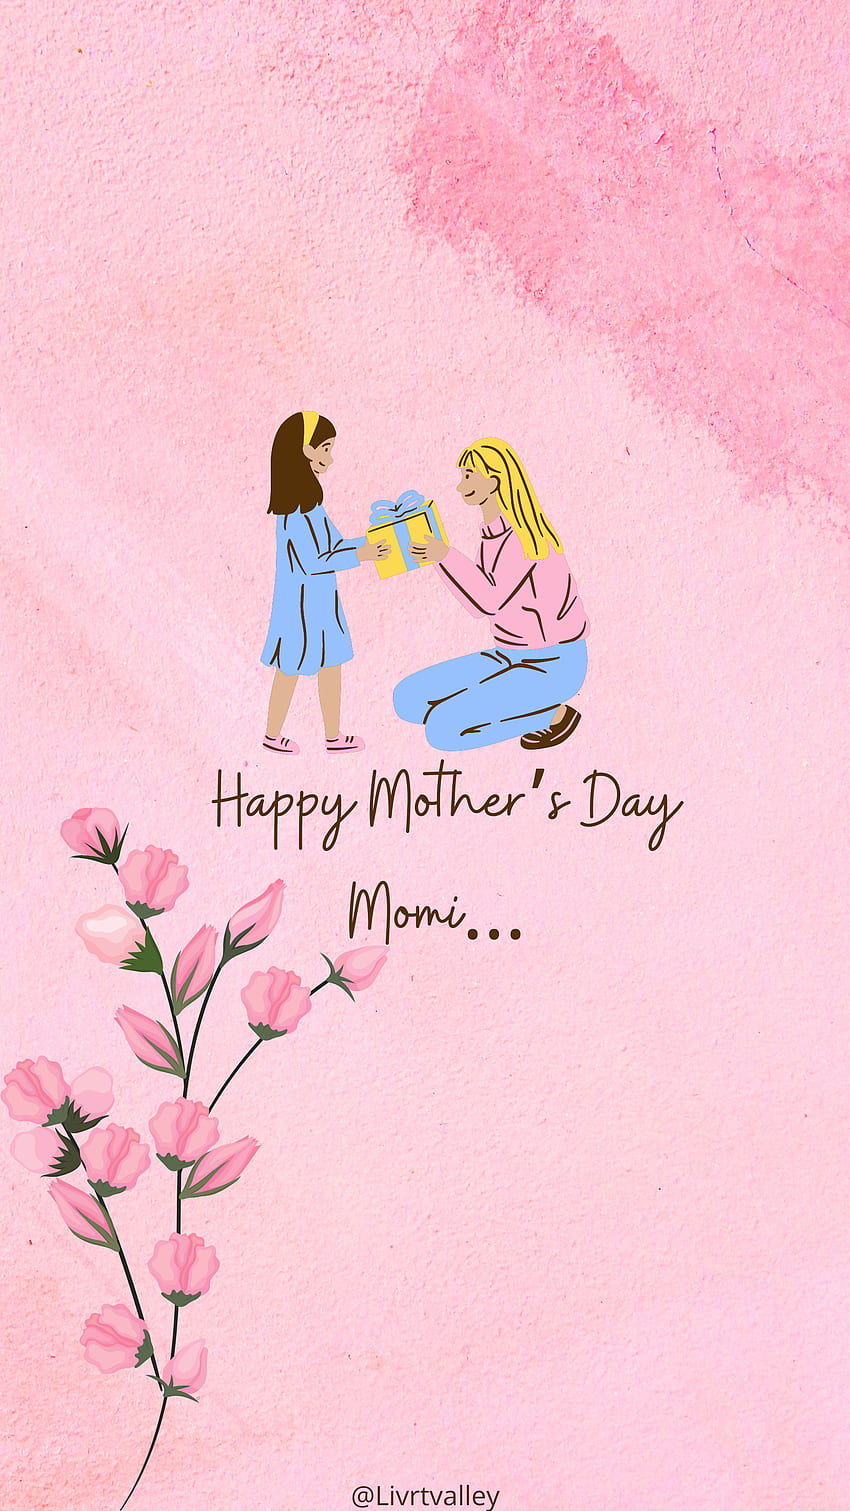 Muttertag, beste Mutter, süße Mutter, Mutter, Muttertagsgeschenk, meine Mutter, Mutter, glücklicher Muttertag, liebe Mutter, Muttertag, Maa HD-Handy-Hintergrundbild